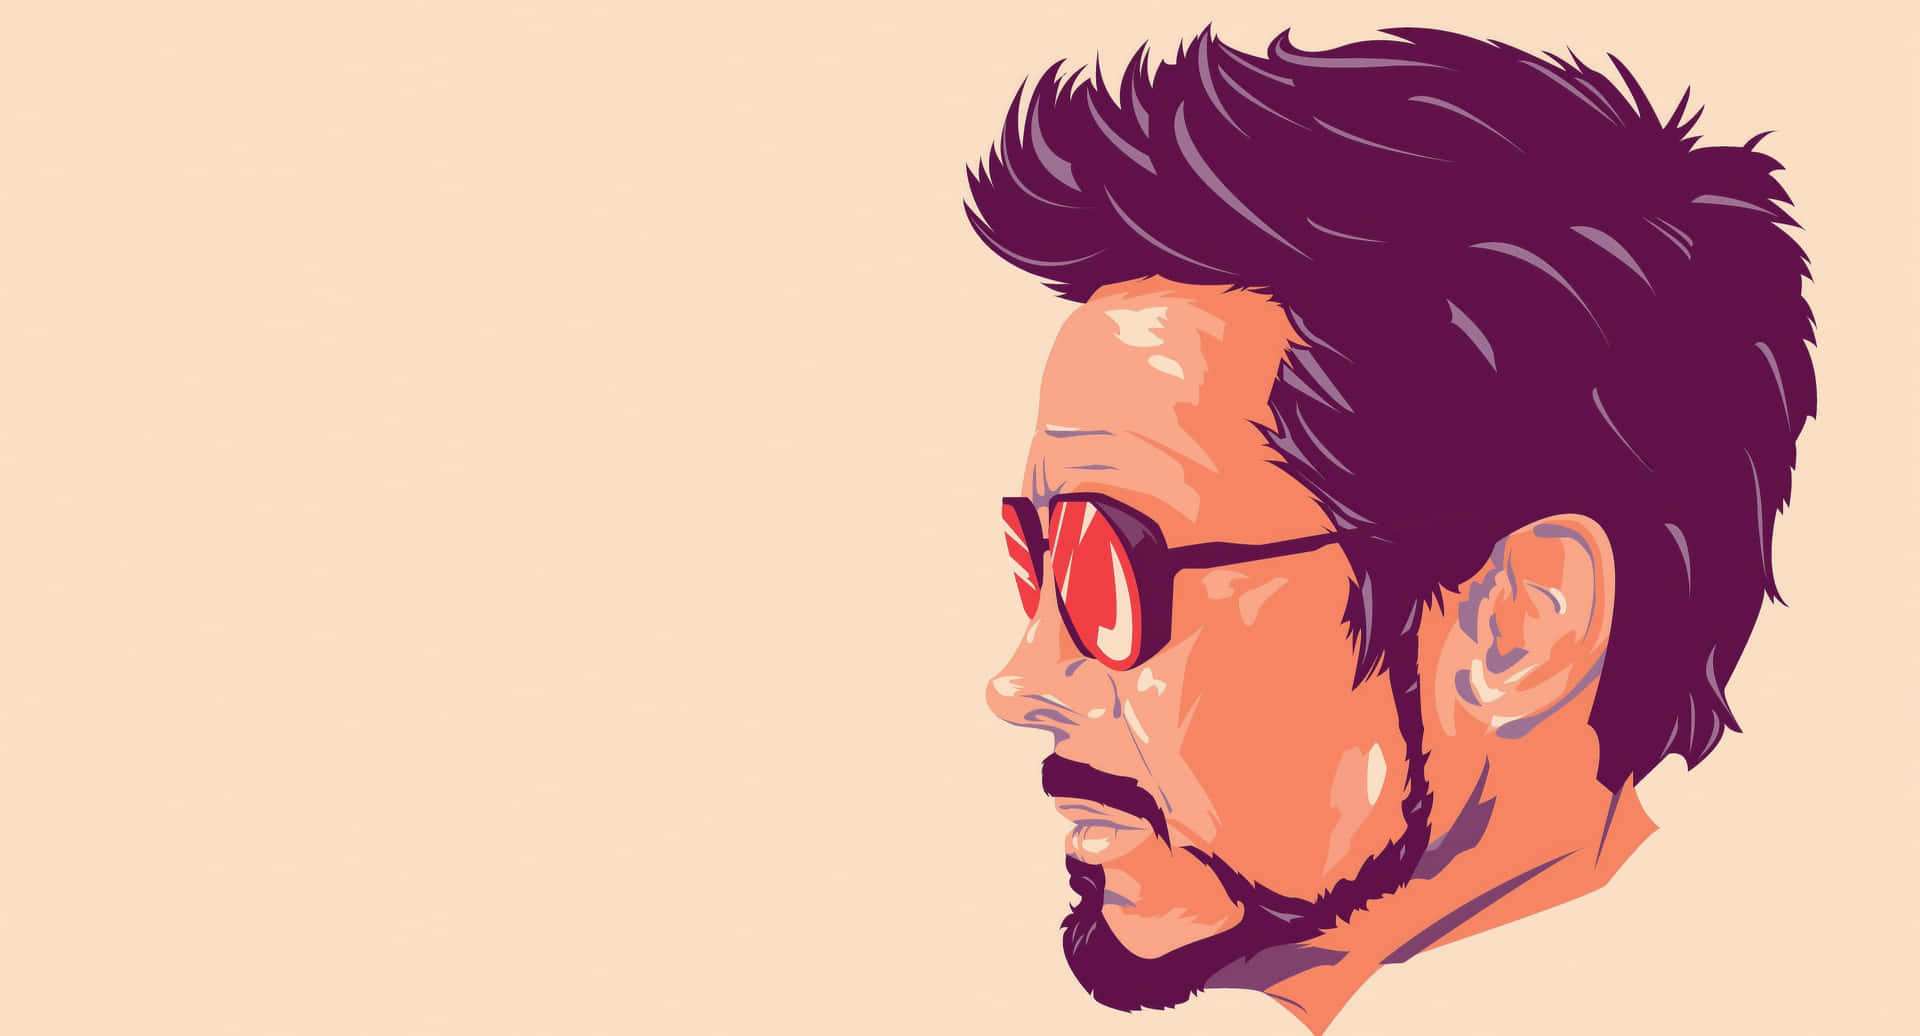 Stylized Tony Stark Profile Illustration